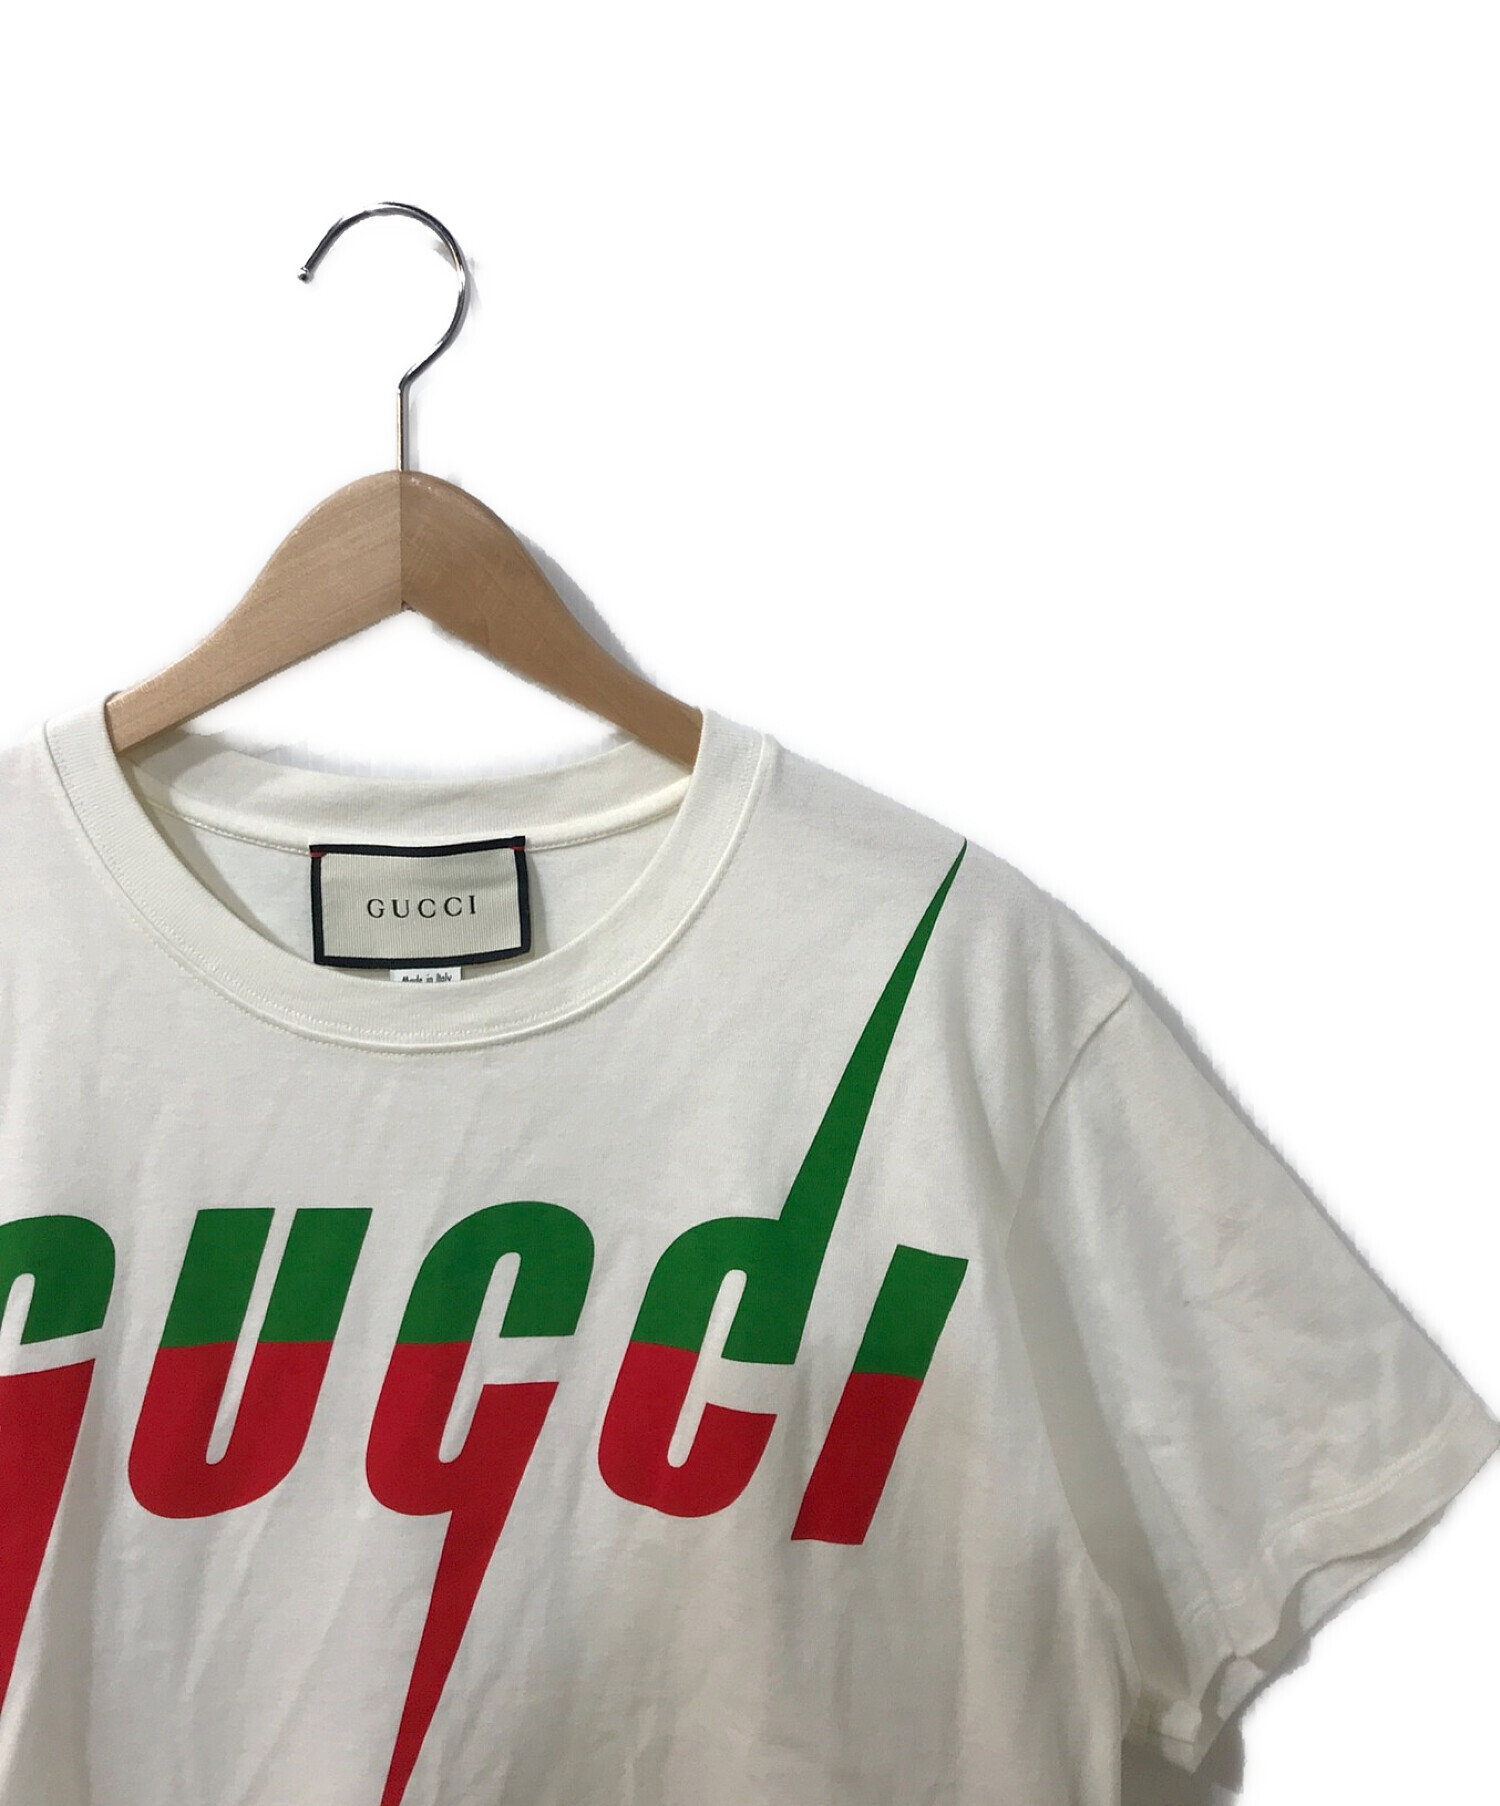 GUCCI (グッチ) ブレードプリントTシャツ ホワイト サイズ:XS